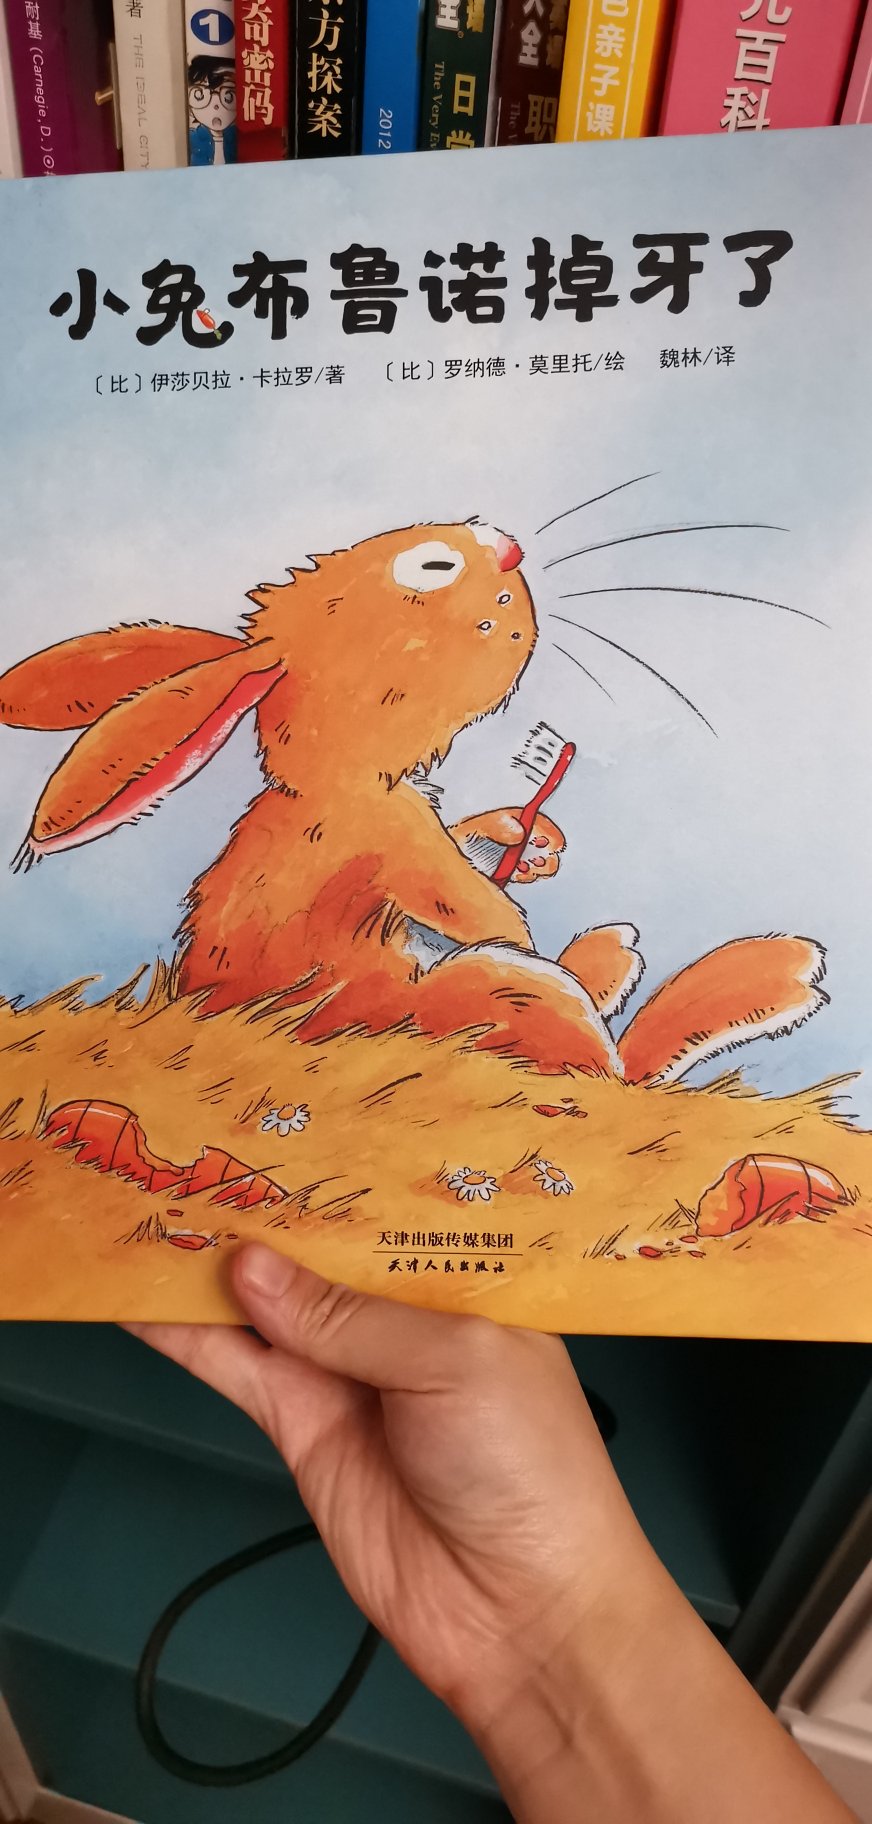 很好的图书，孩子看到兔子的牙齿掉下来会着急，看到狐狸要吃兔子会生气赶狐狸